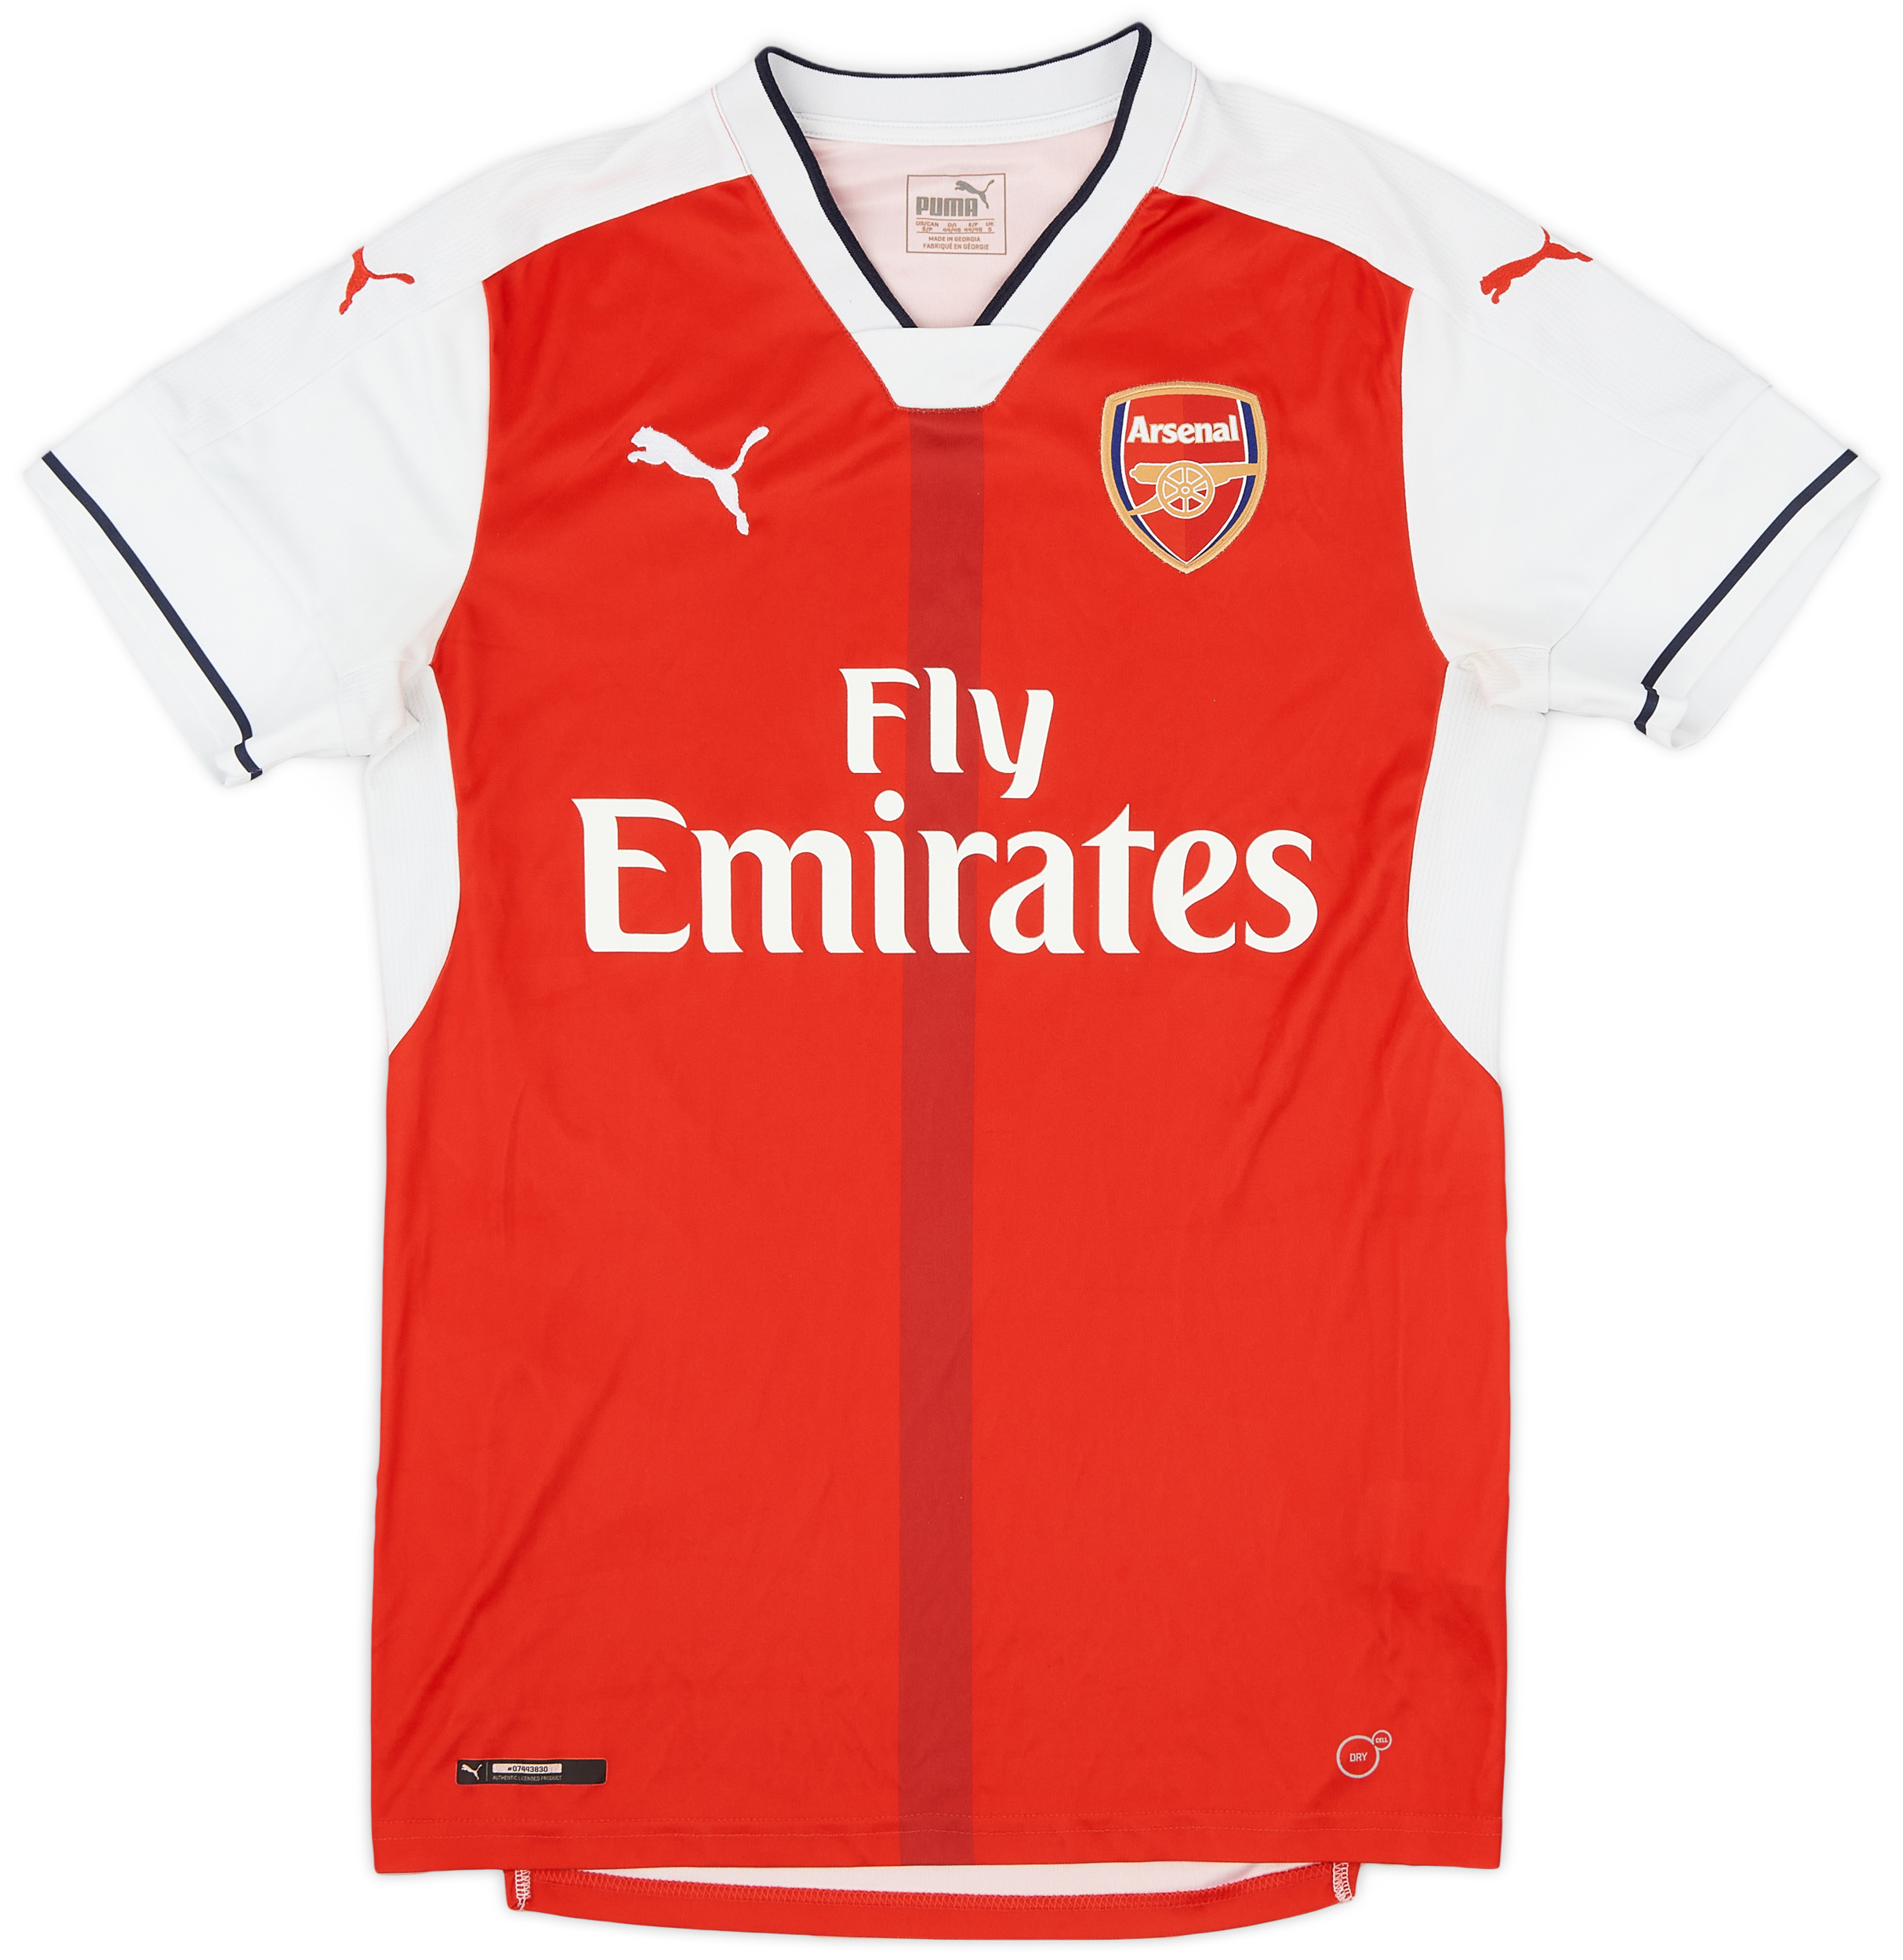 2016-17 Arsenal Home Shirt - 9/10 - ()